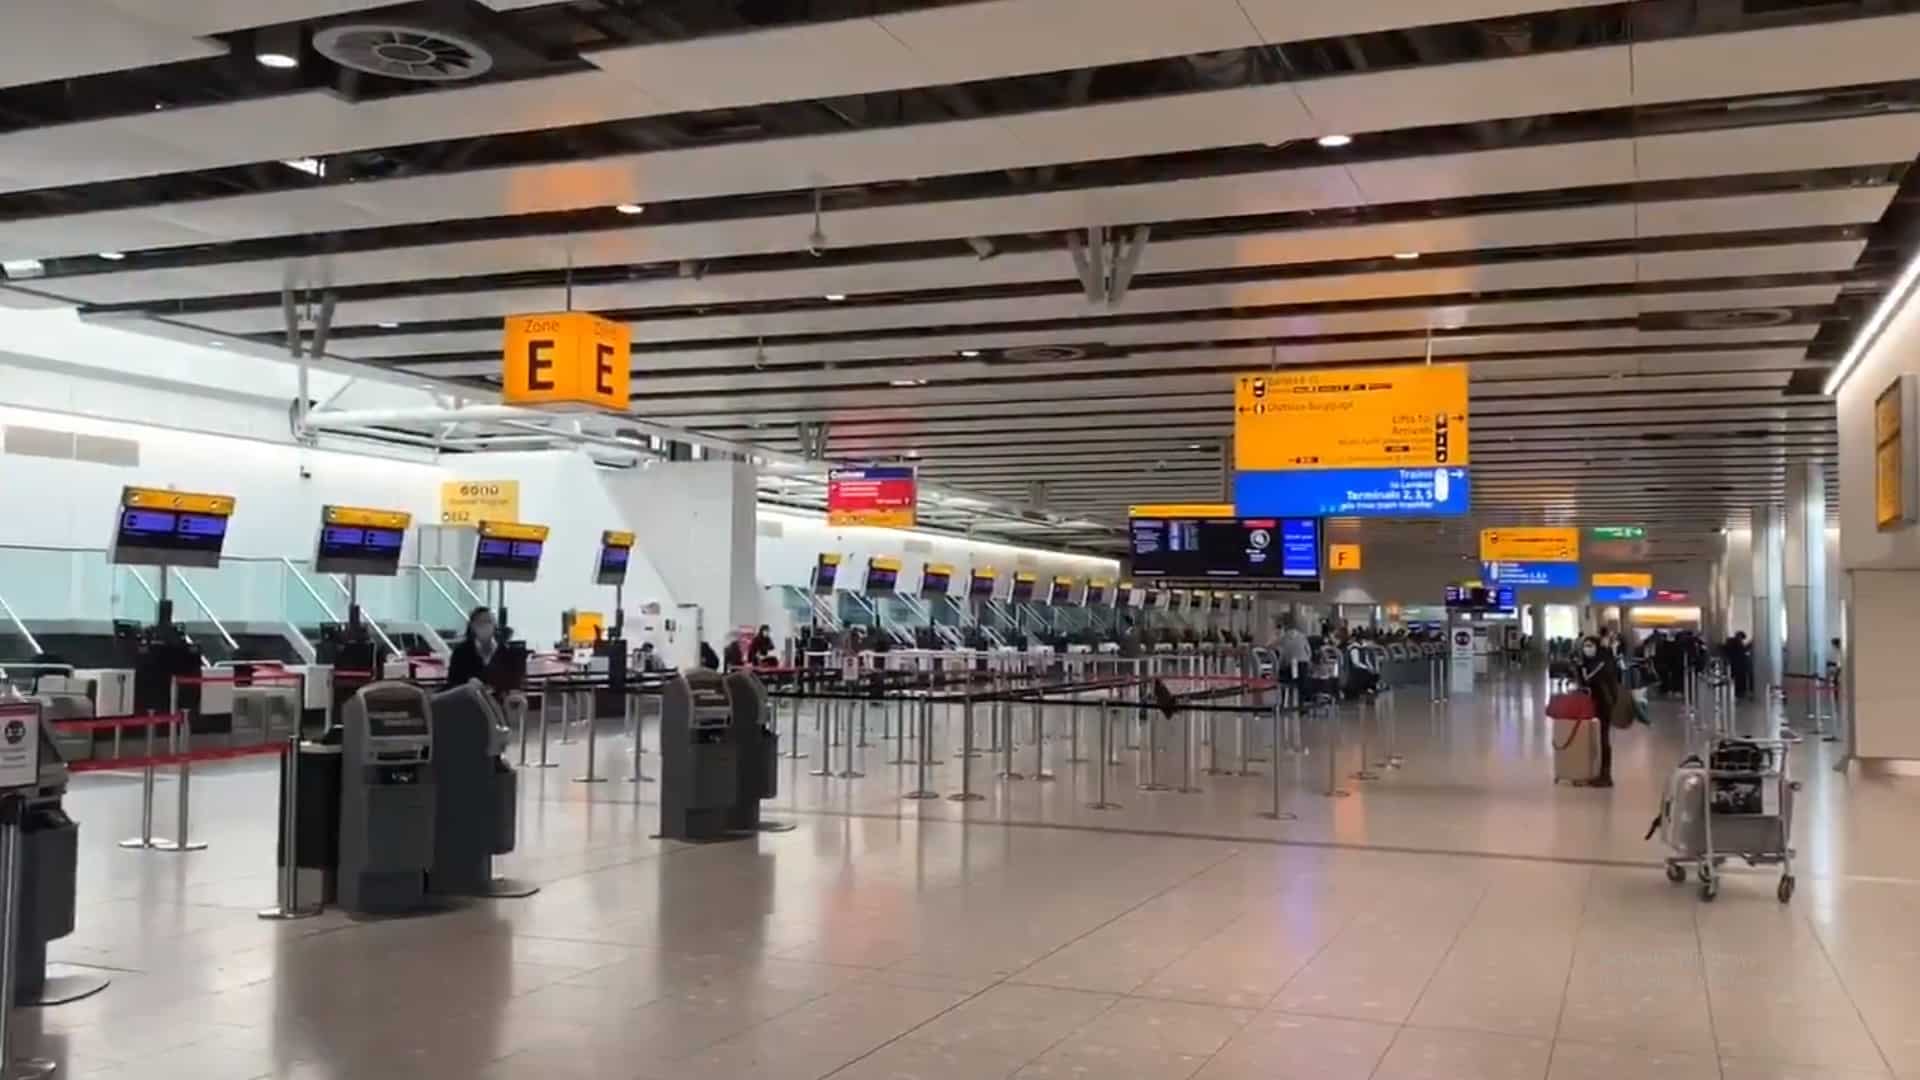 فيديو.. عودة آمنة من مطار هيثرو بلندن إلى مطار الملك خالد